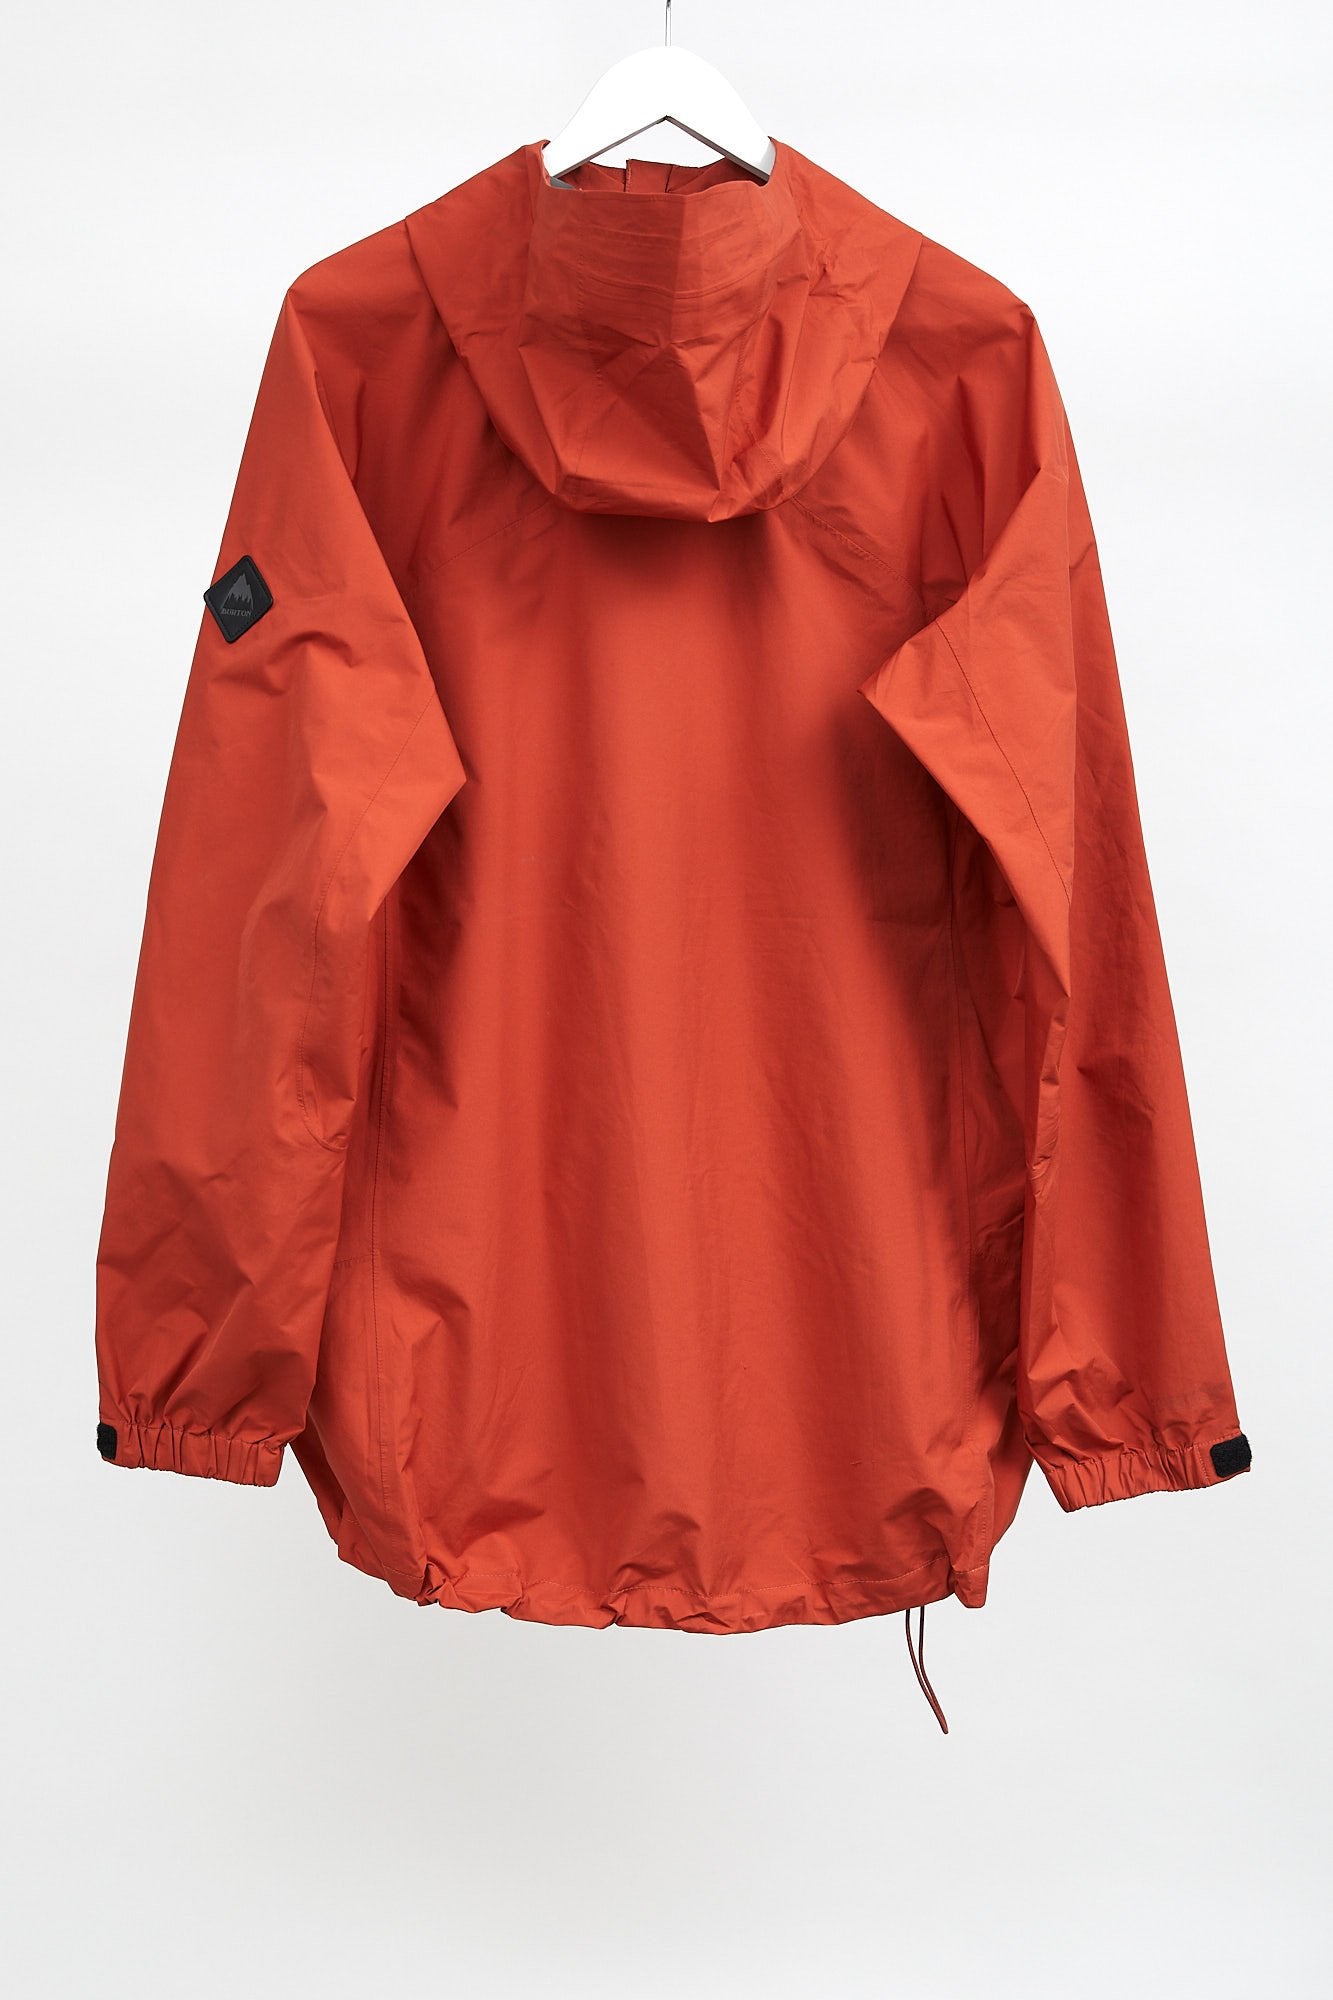 Mens Orange/Red Burton Shell Jacket: Size Large